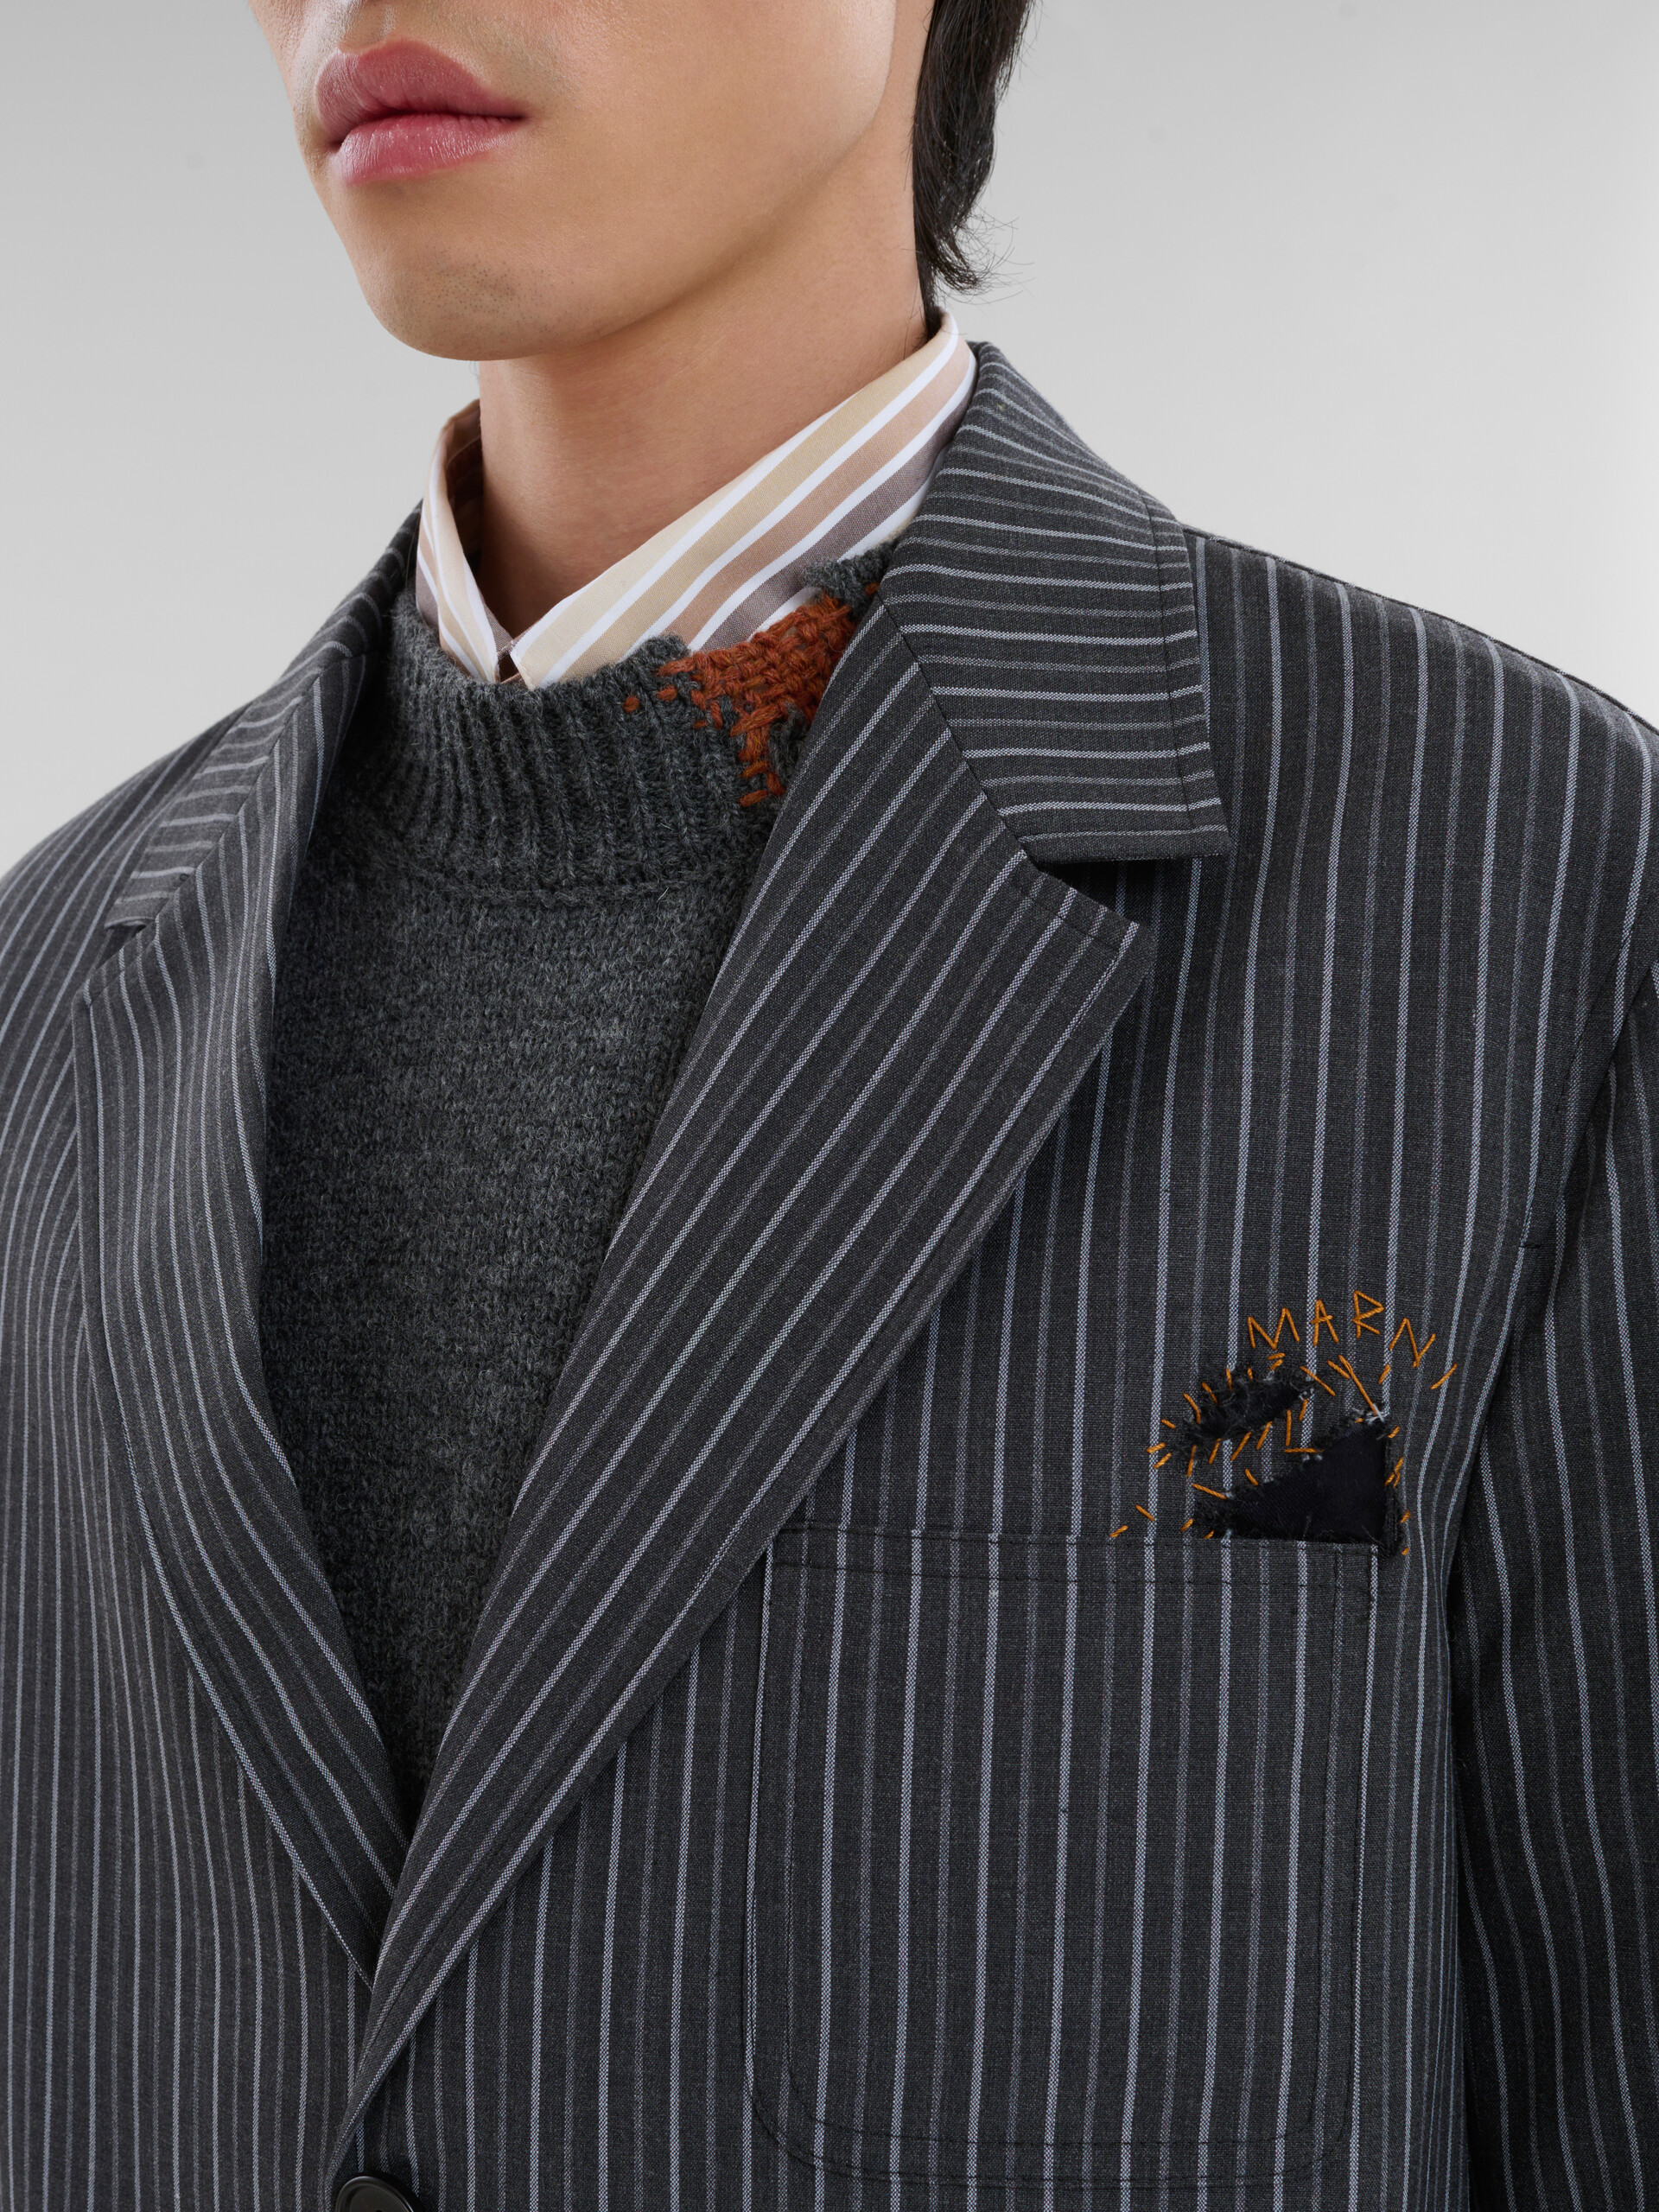 Blazer in lana gessata nera con applicazioni rammendo Marni - Giacche - Image 4